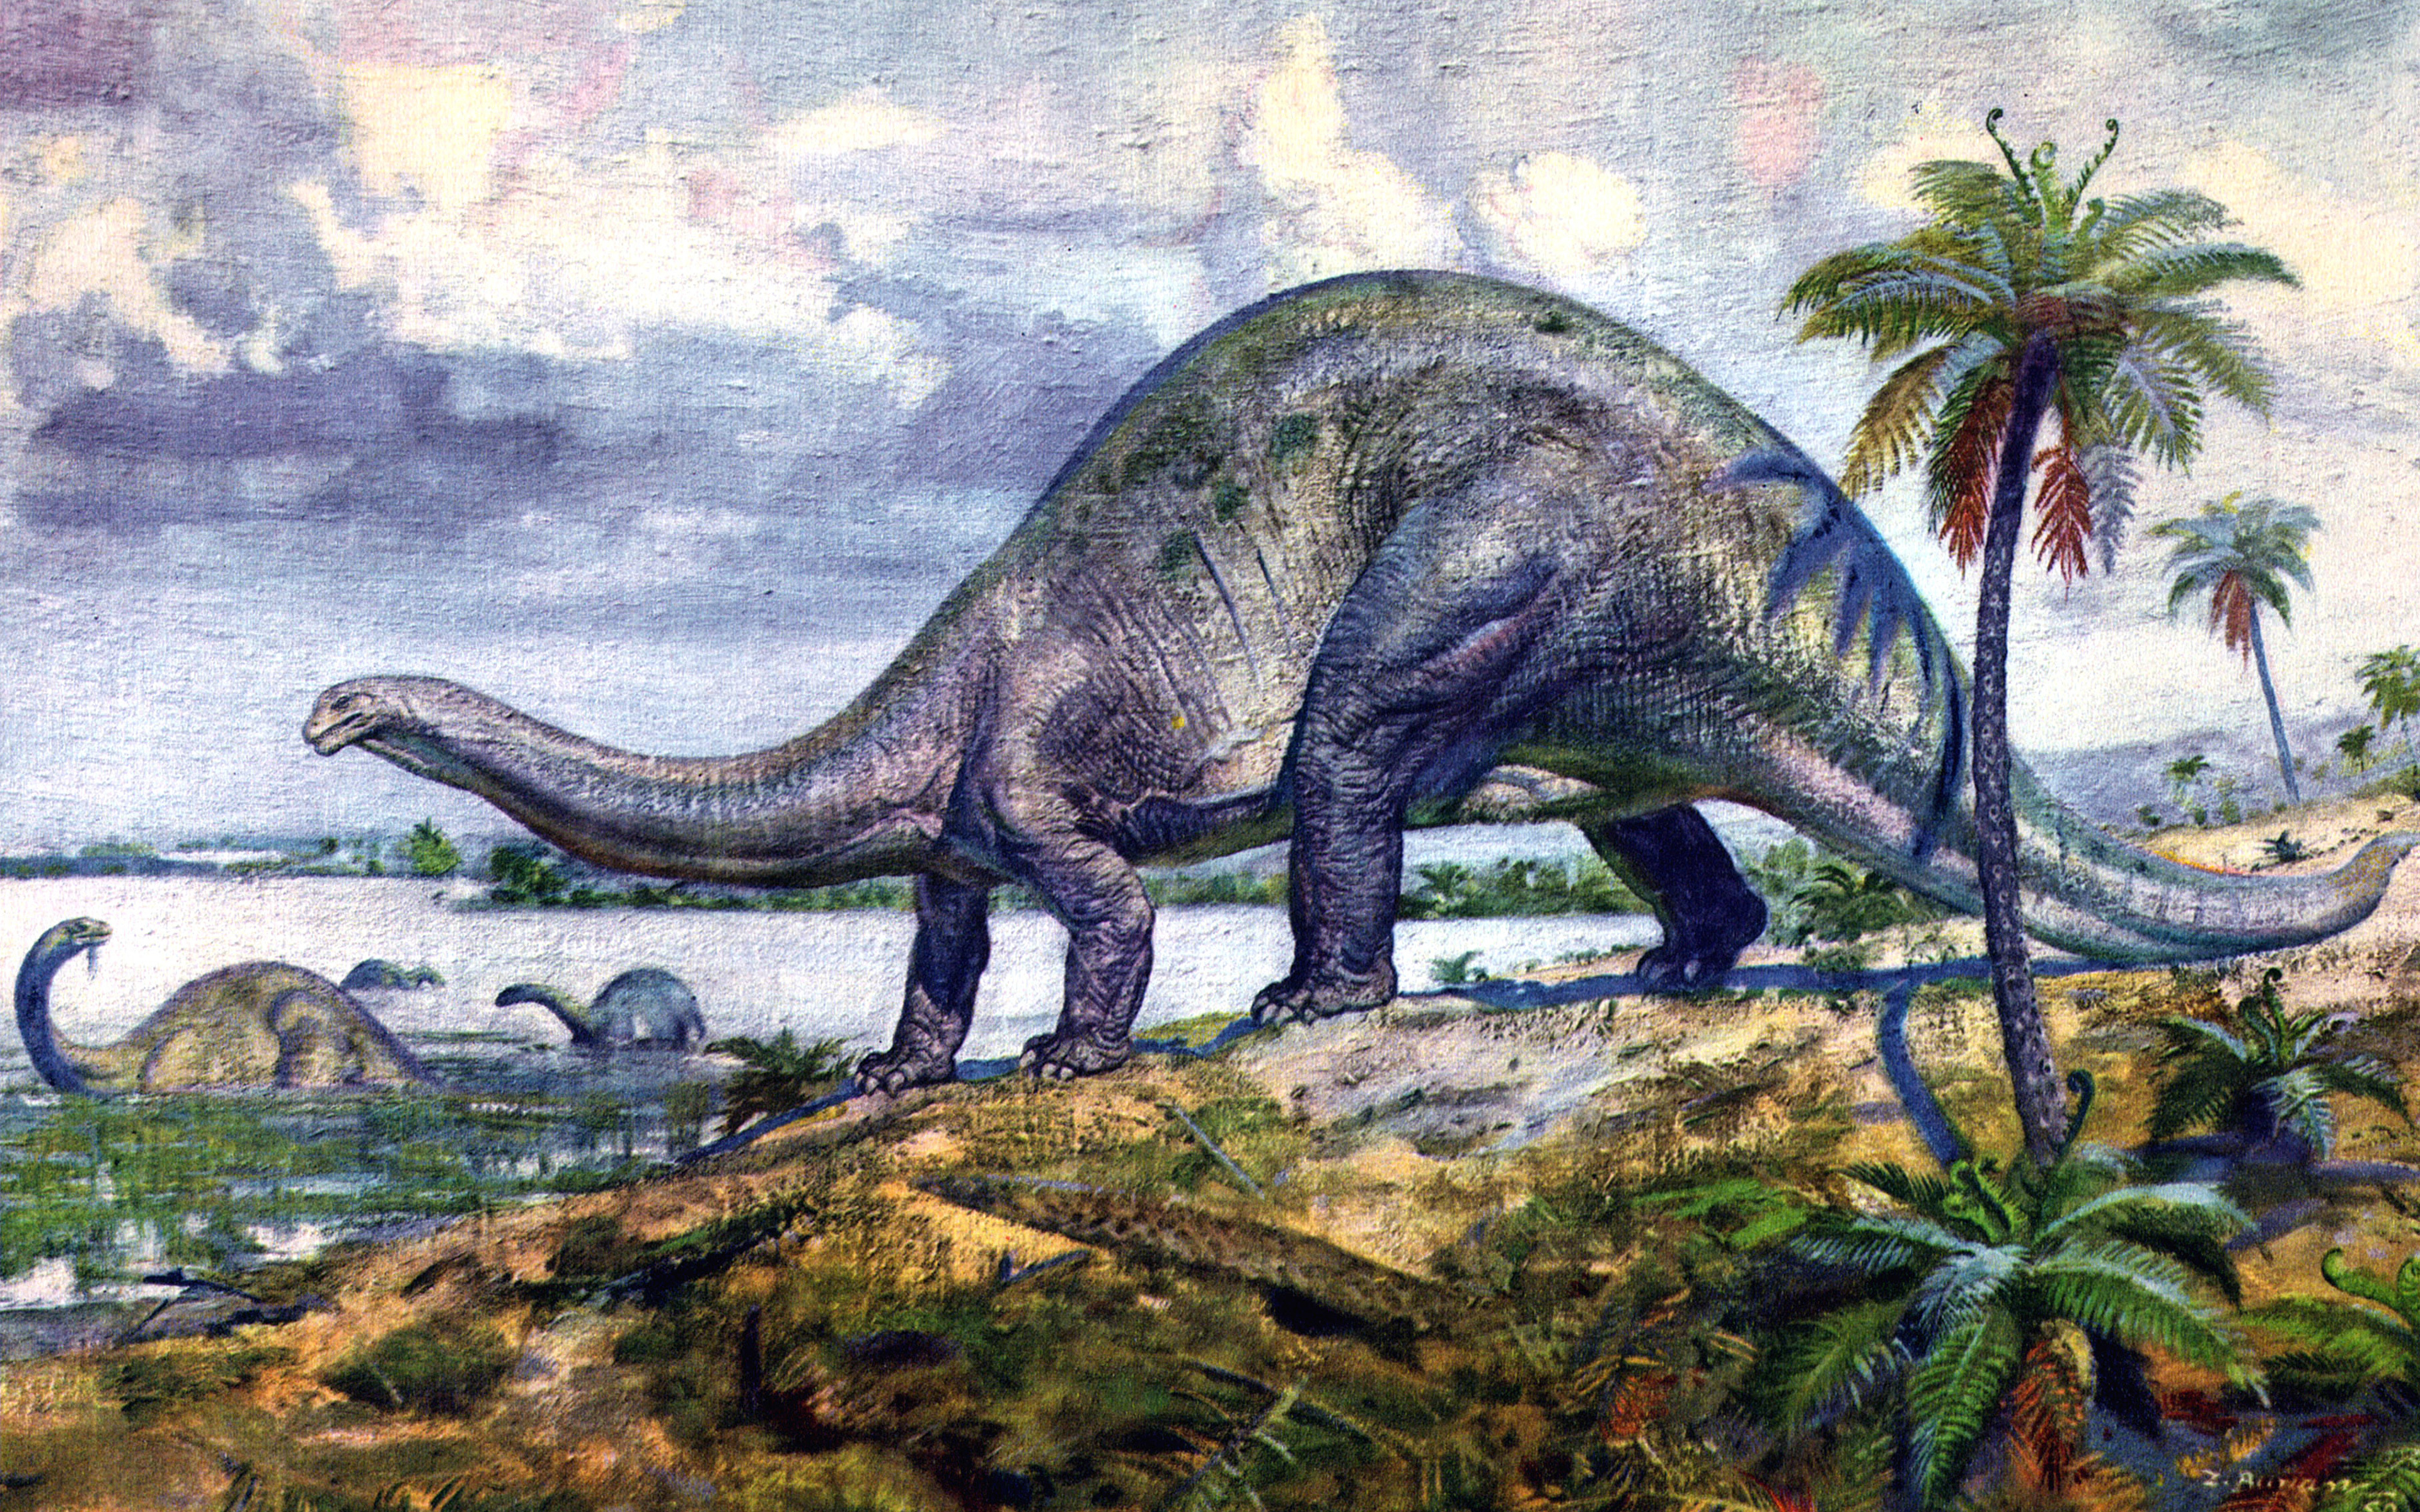 Организмы мезозойской эры. Динозавры Триасового периода. Юрский период мезозойской эры. Динозавры мезозойской эры. Триасовый период мезозойской эры.